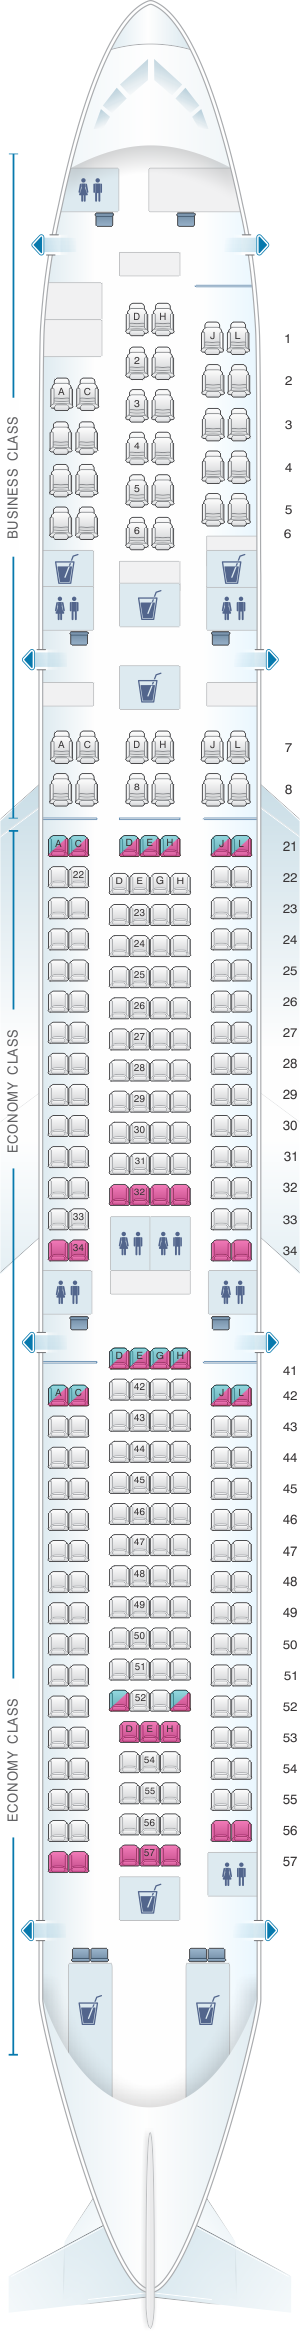 Seat map for Finnair Airbus A340 300 270PAX